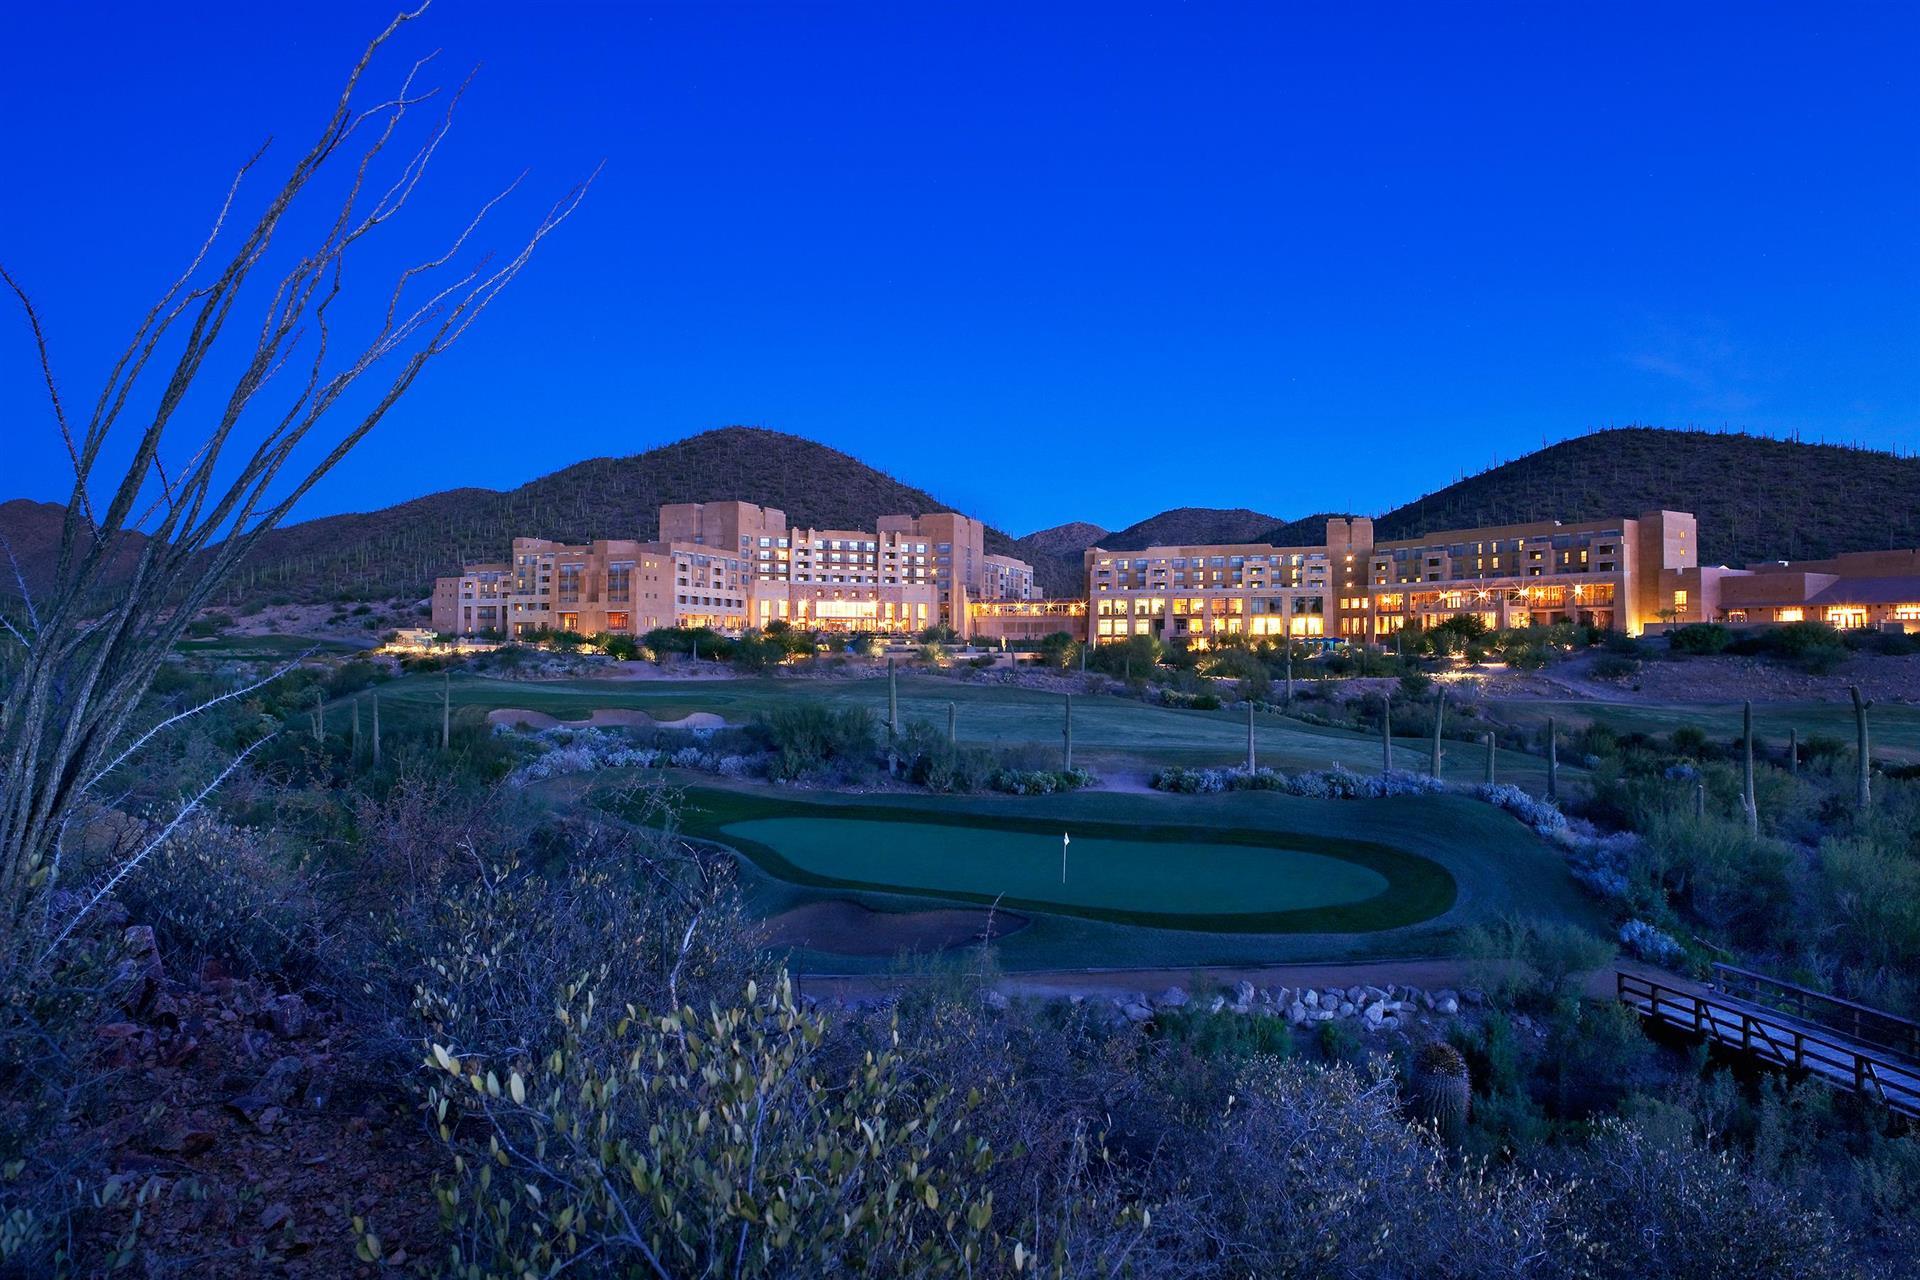 JW Marriott Tucson Starr Pass Resort & Spa in Tucson, AZ